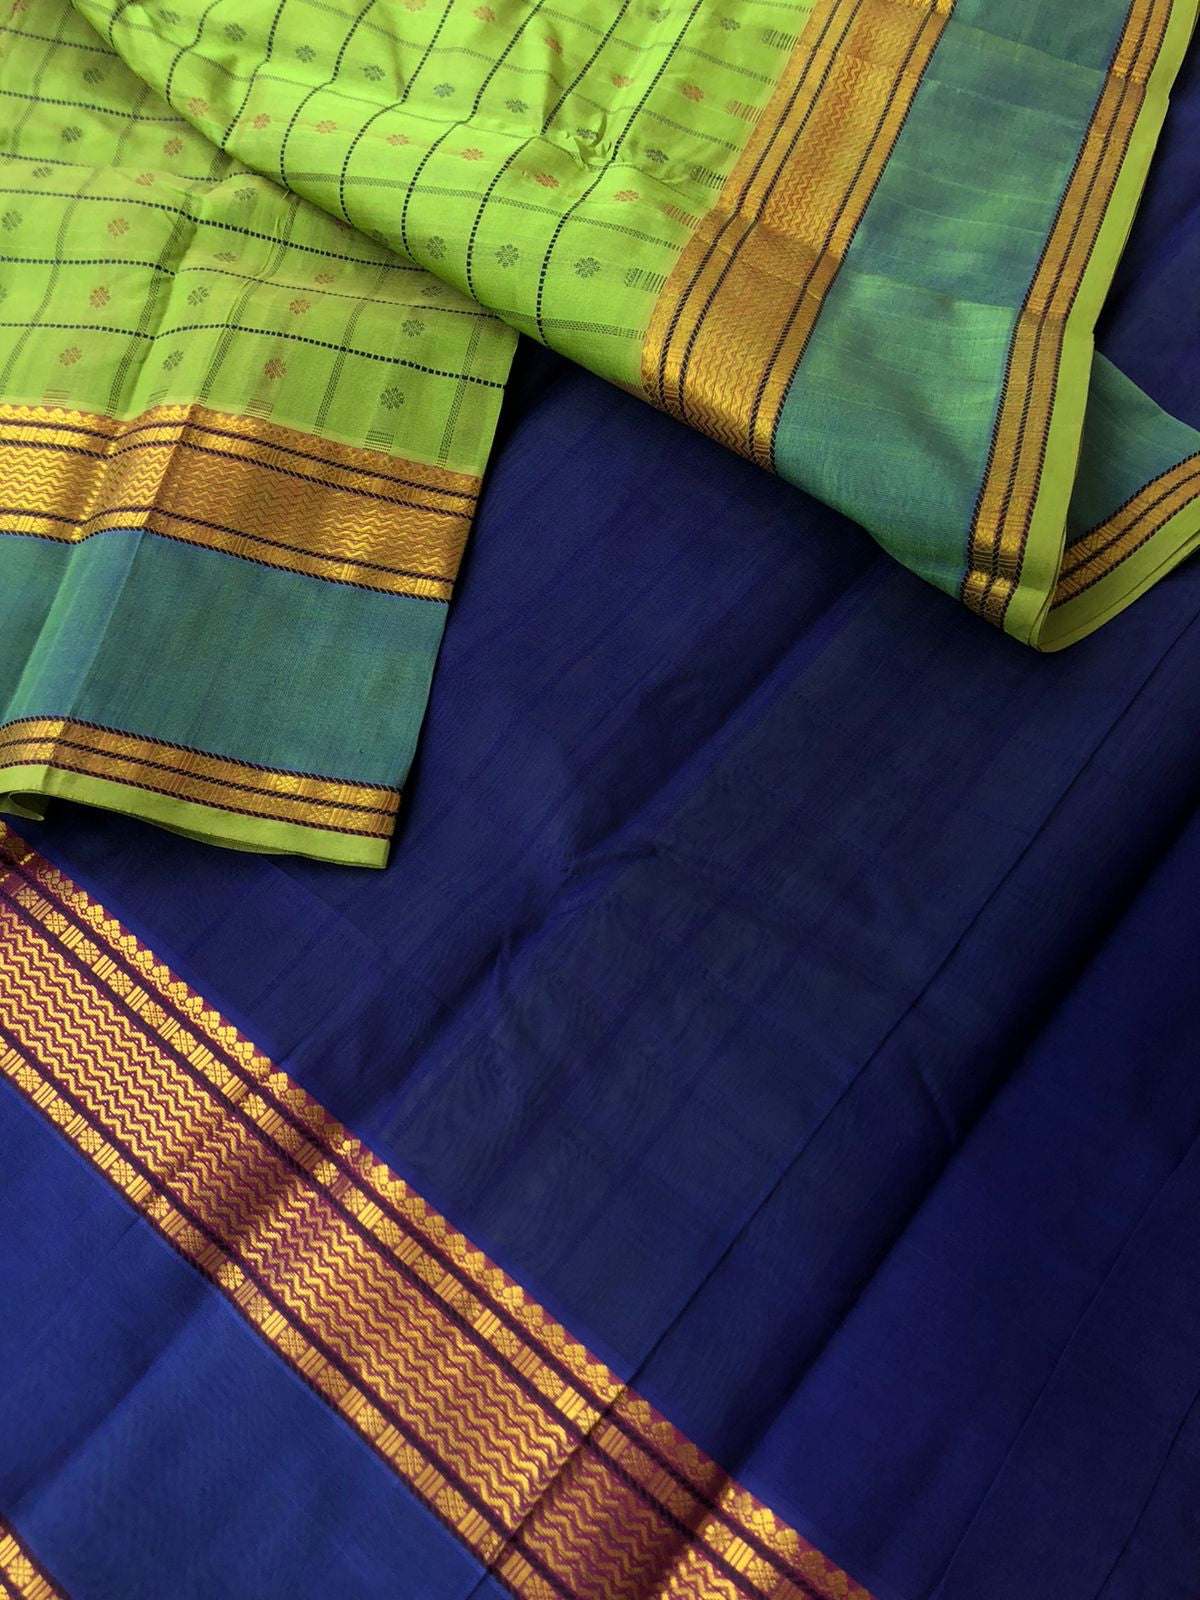 Woven Motifs Silk Cotton - apple green and ink blue Lakshadeepam